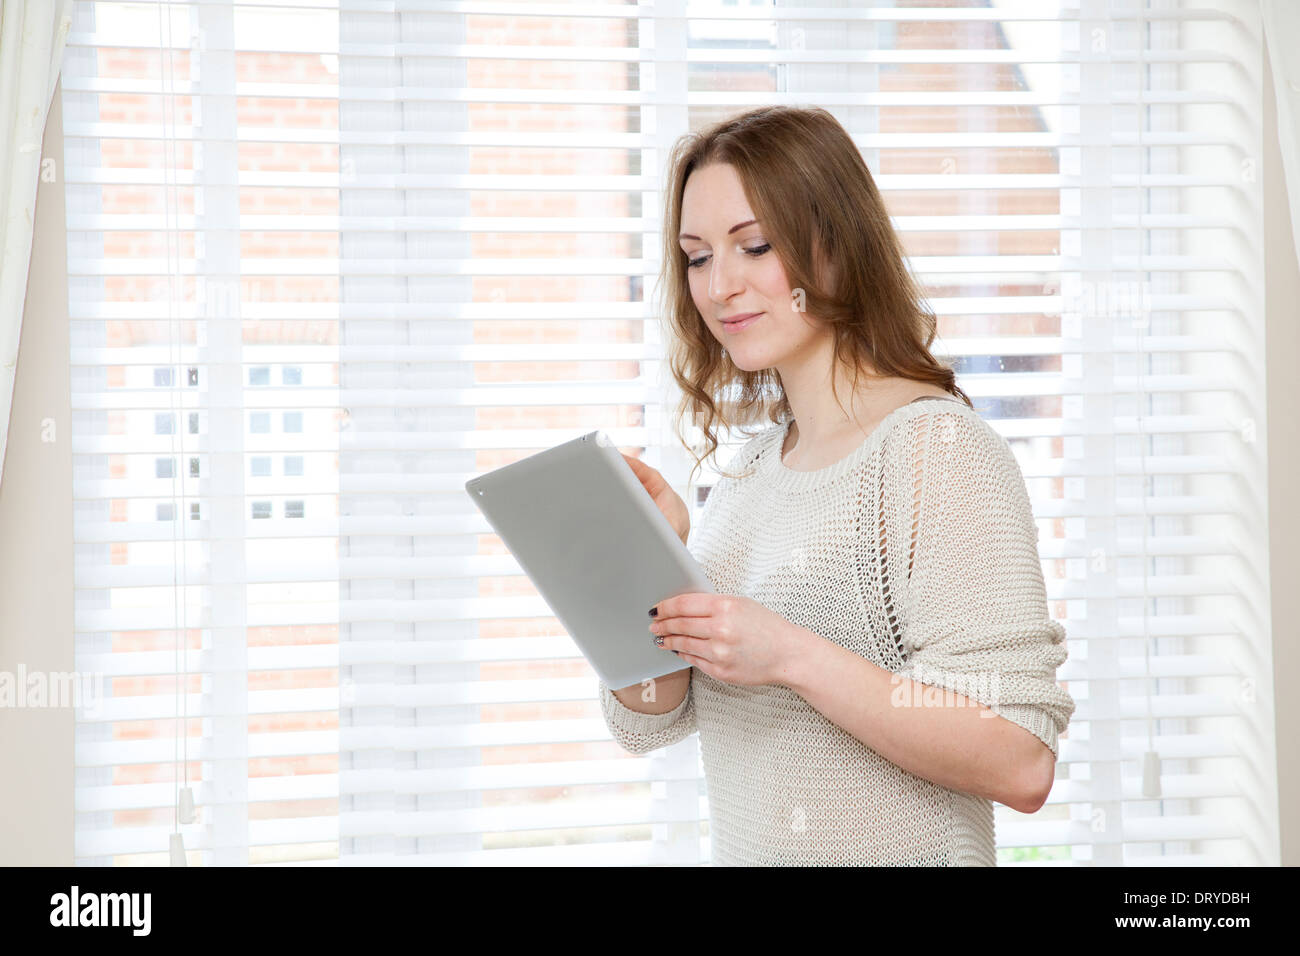 Junge attraktive Frau hält ein digitale Tablet (Ipad), durch weiße Jalousien. Stockfoto